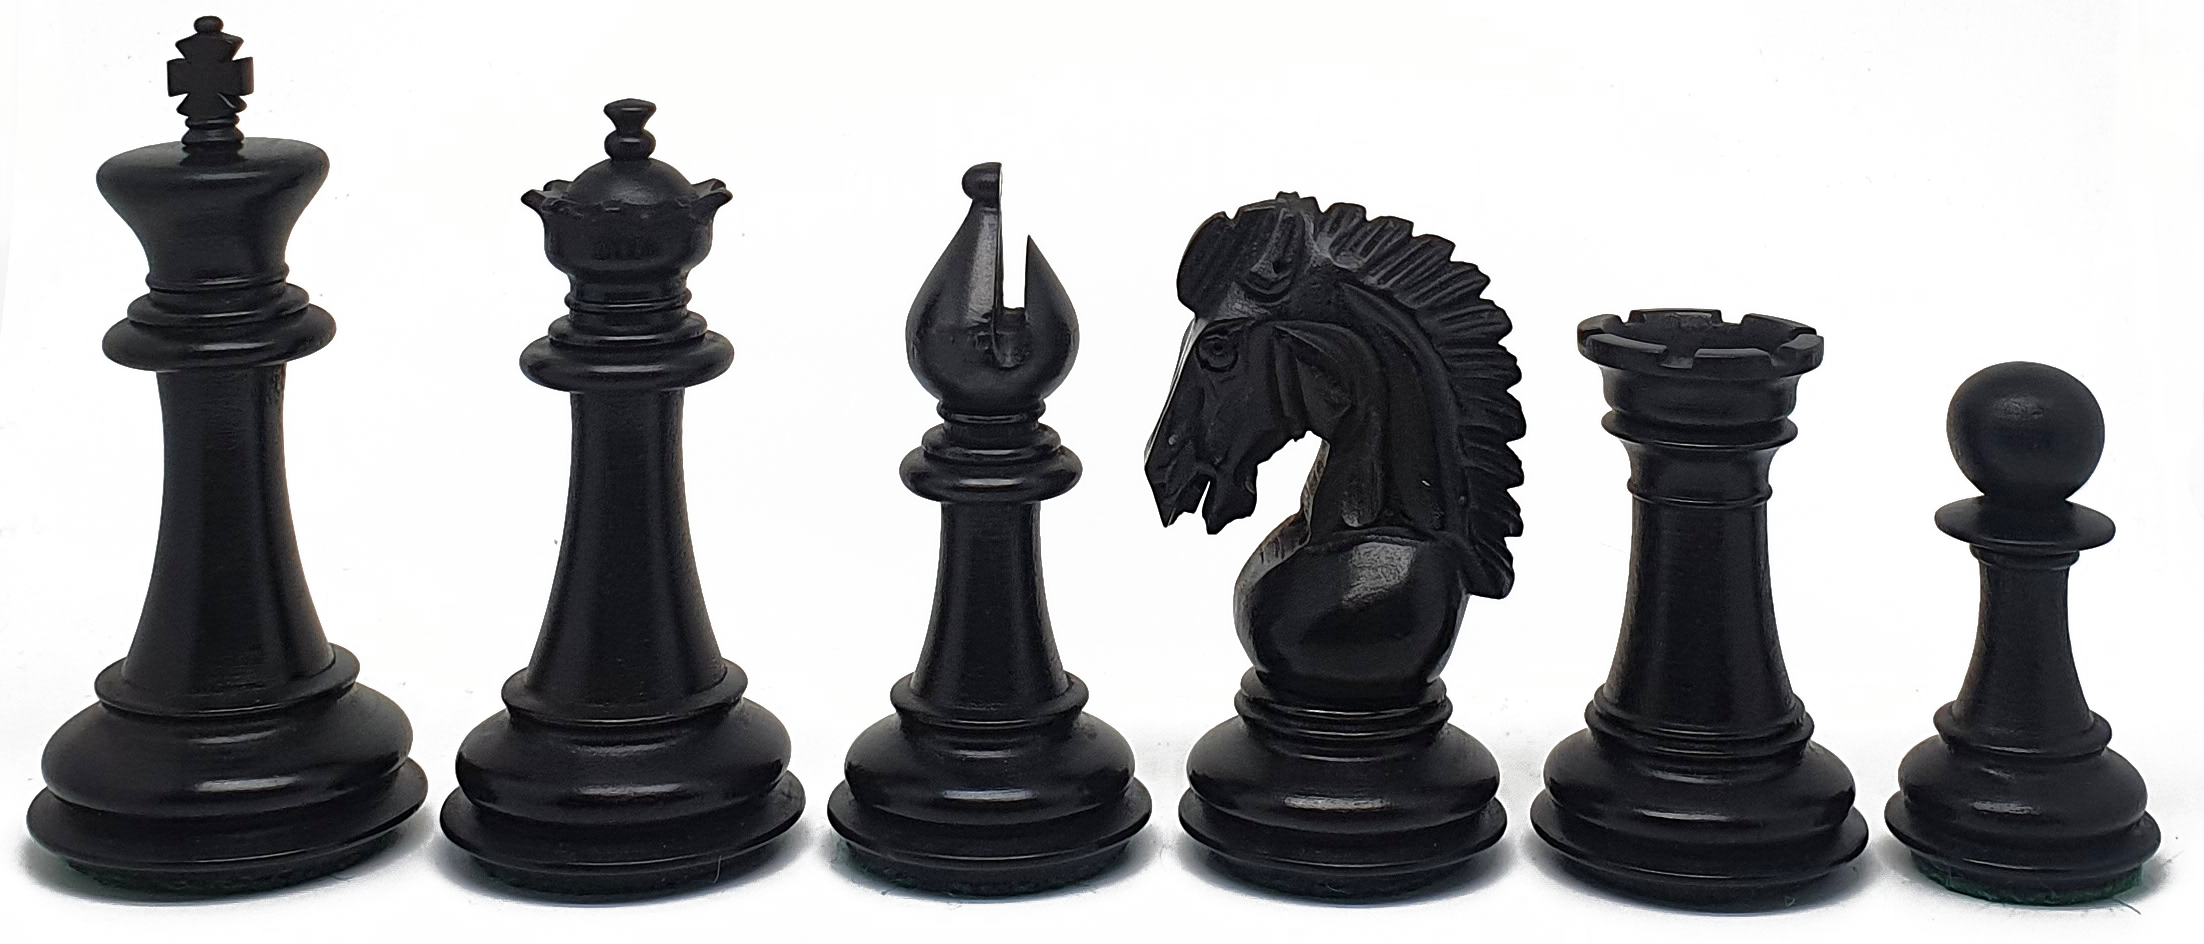 VI/ Piezas de ajedrez modelo Adventure "3.75" Ebanizado.